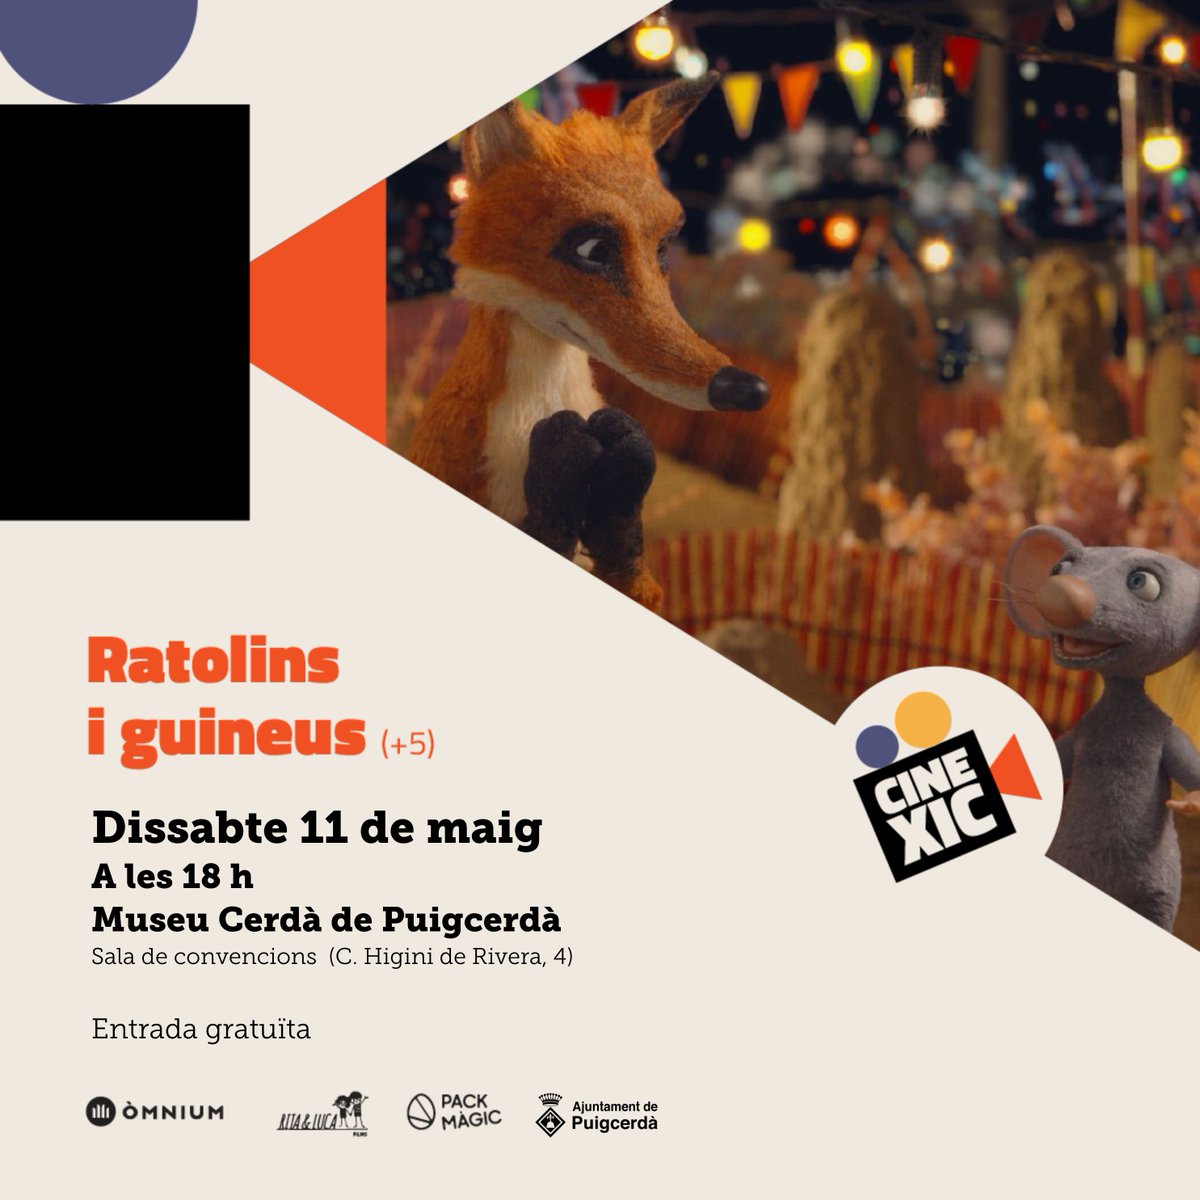 🎥 Puigcerdà projectarà 𝙘𝙞𝙣𝙚𝙢𝙖 𝙞𝙣𝙛𝙖𝙣𝙩𝙞𝙡 𝙚𝙣 𝙘𝙖𝙩𝙖𝙡𝙖̀ un dissabte al mes de forma gratuïta! 🎞️ La primera pel·lícula que es projectarà dins del projecte CineXic serà 'Ratolins i guineus', el dissabte 11 de maig a les 18h, al Museu Cerdà! #CineXic @omnium